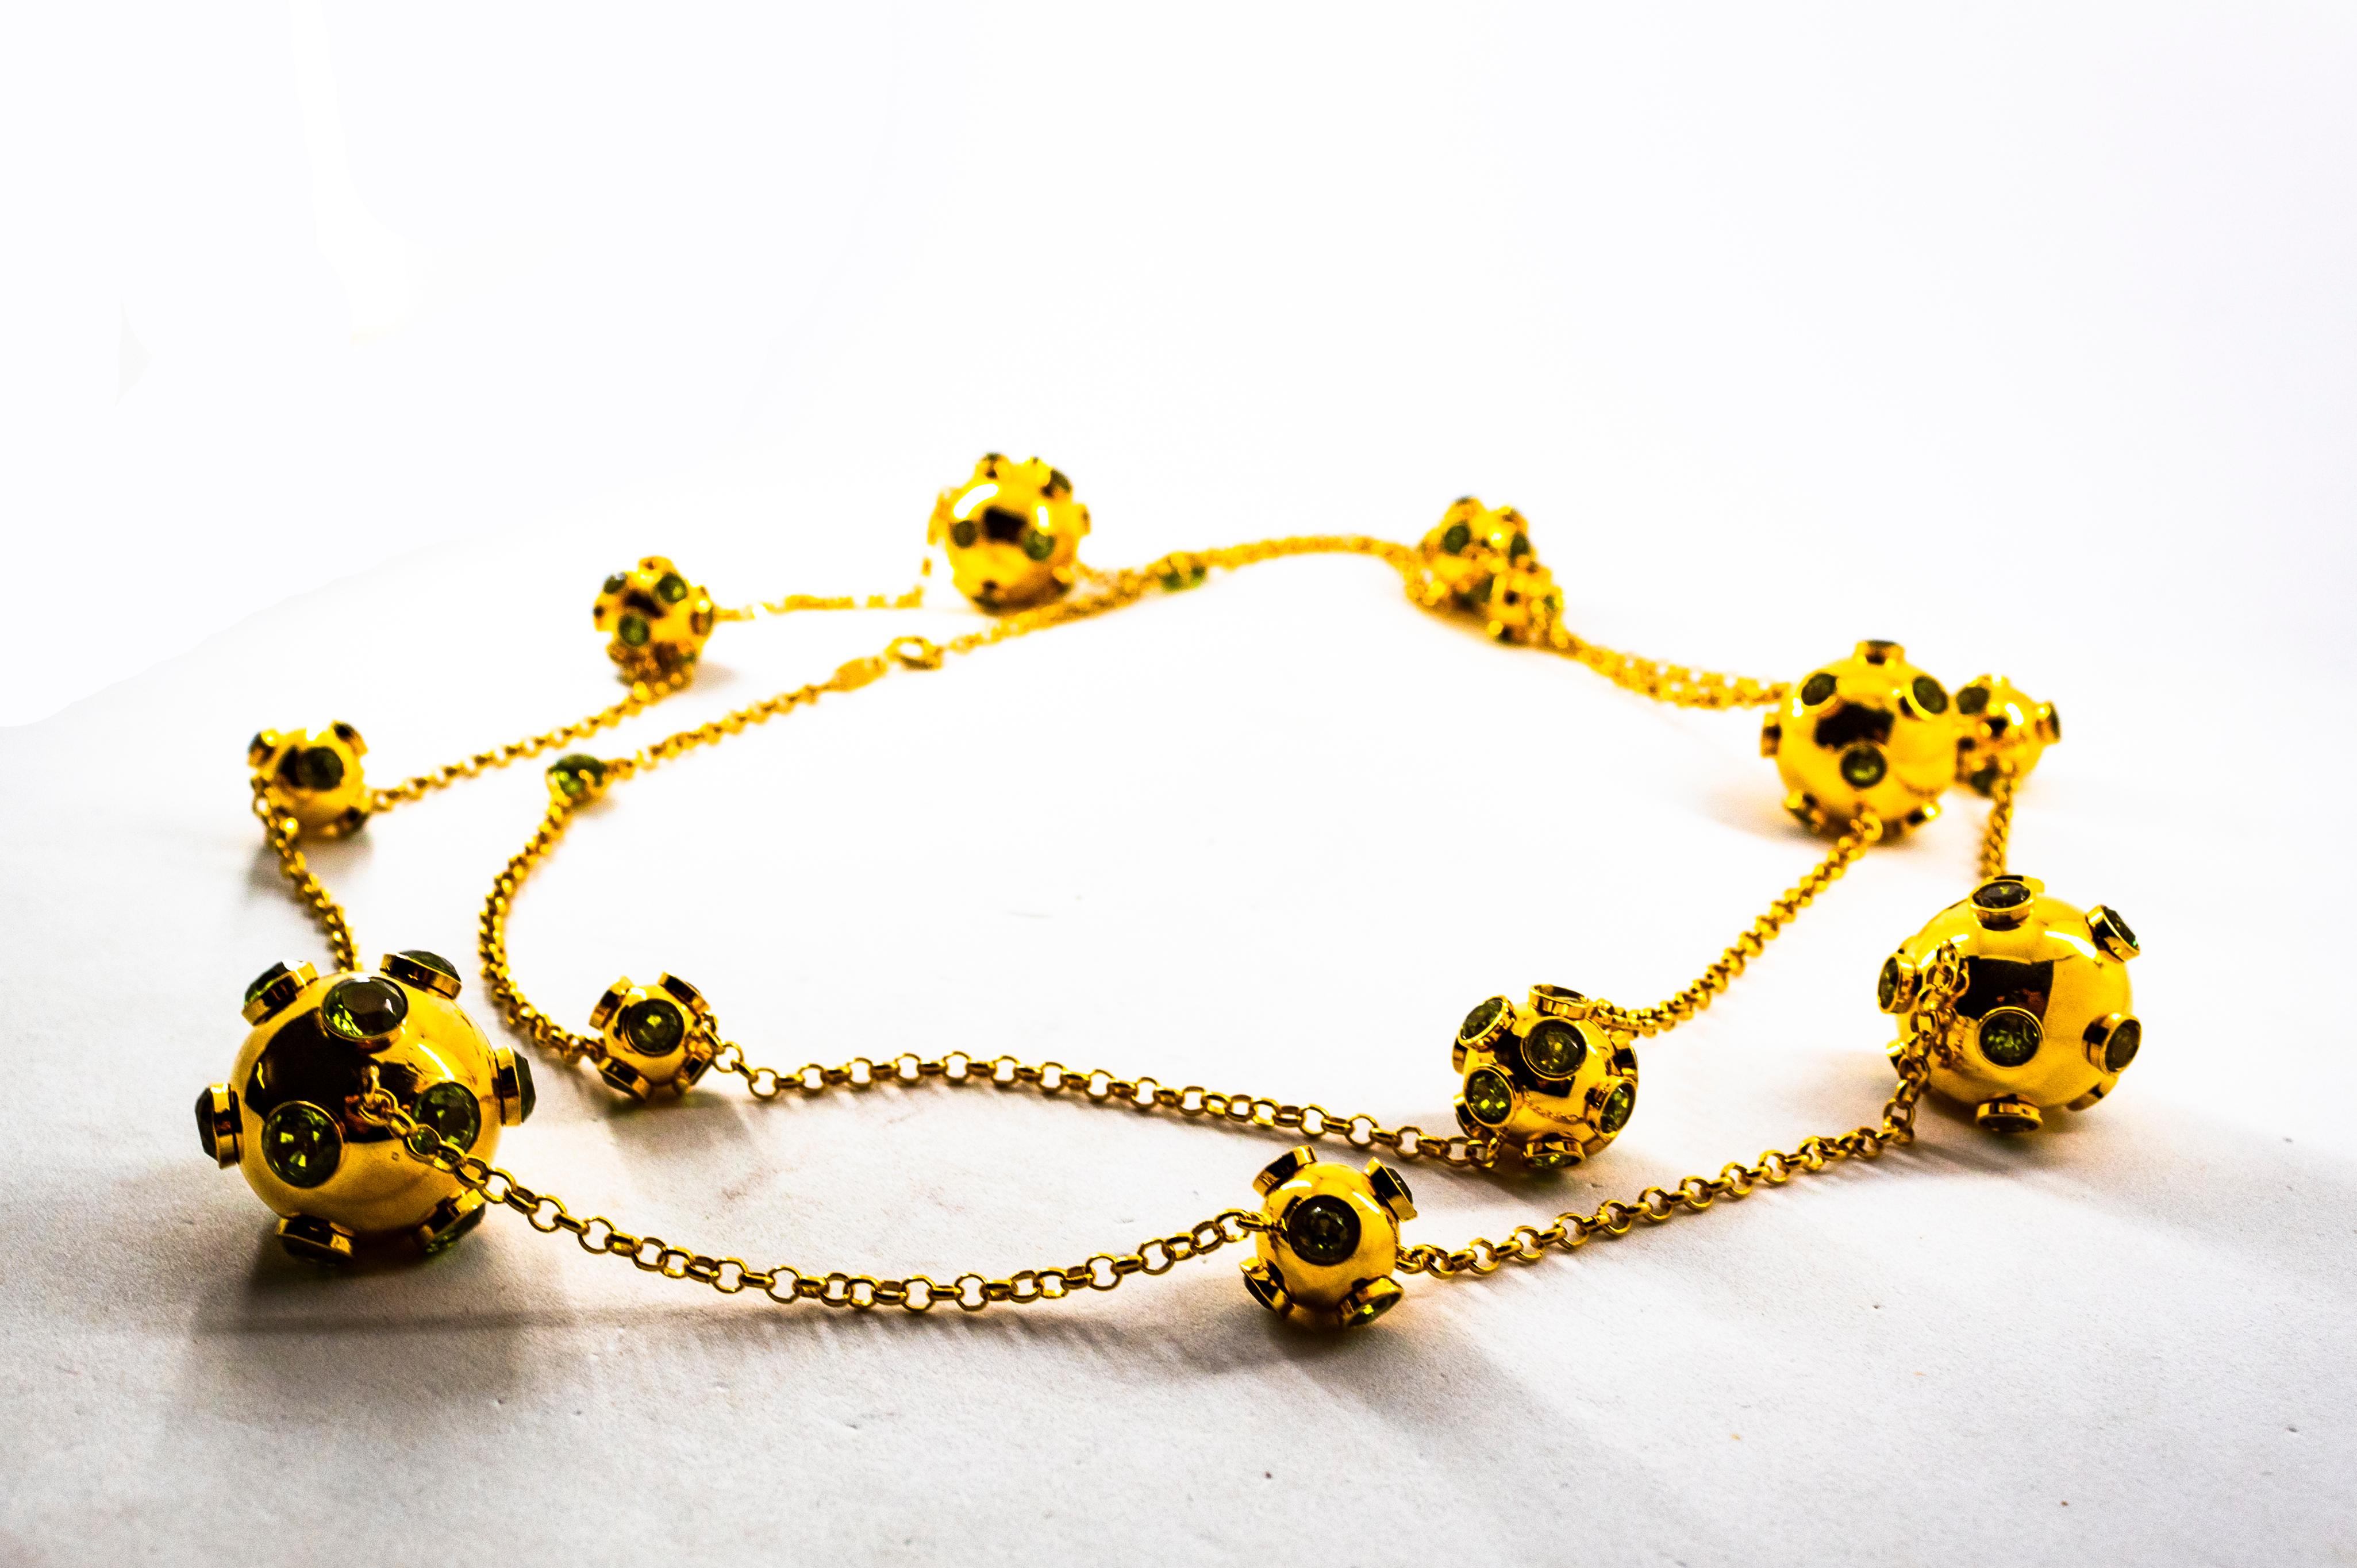 Diese Halskette ist aus 9K Gelbgold gefertigt.
Diese Halskette hat 50,00 Karat Peridot.
Diese Halskette ist vom Art Deco inspiriert.
Die Länge der Halskette beträgt 120 cm.

Diese Halskette ist auch in einer kürzeren Version erhältlich.
Zu dieser